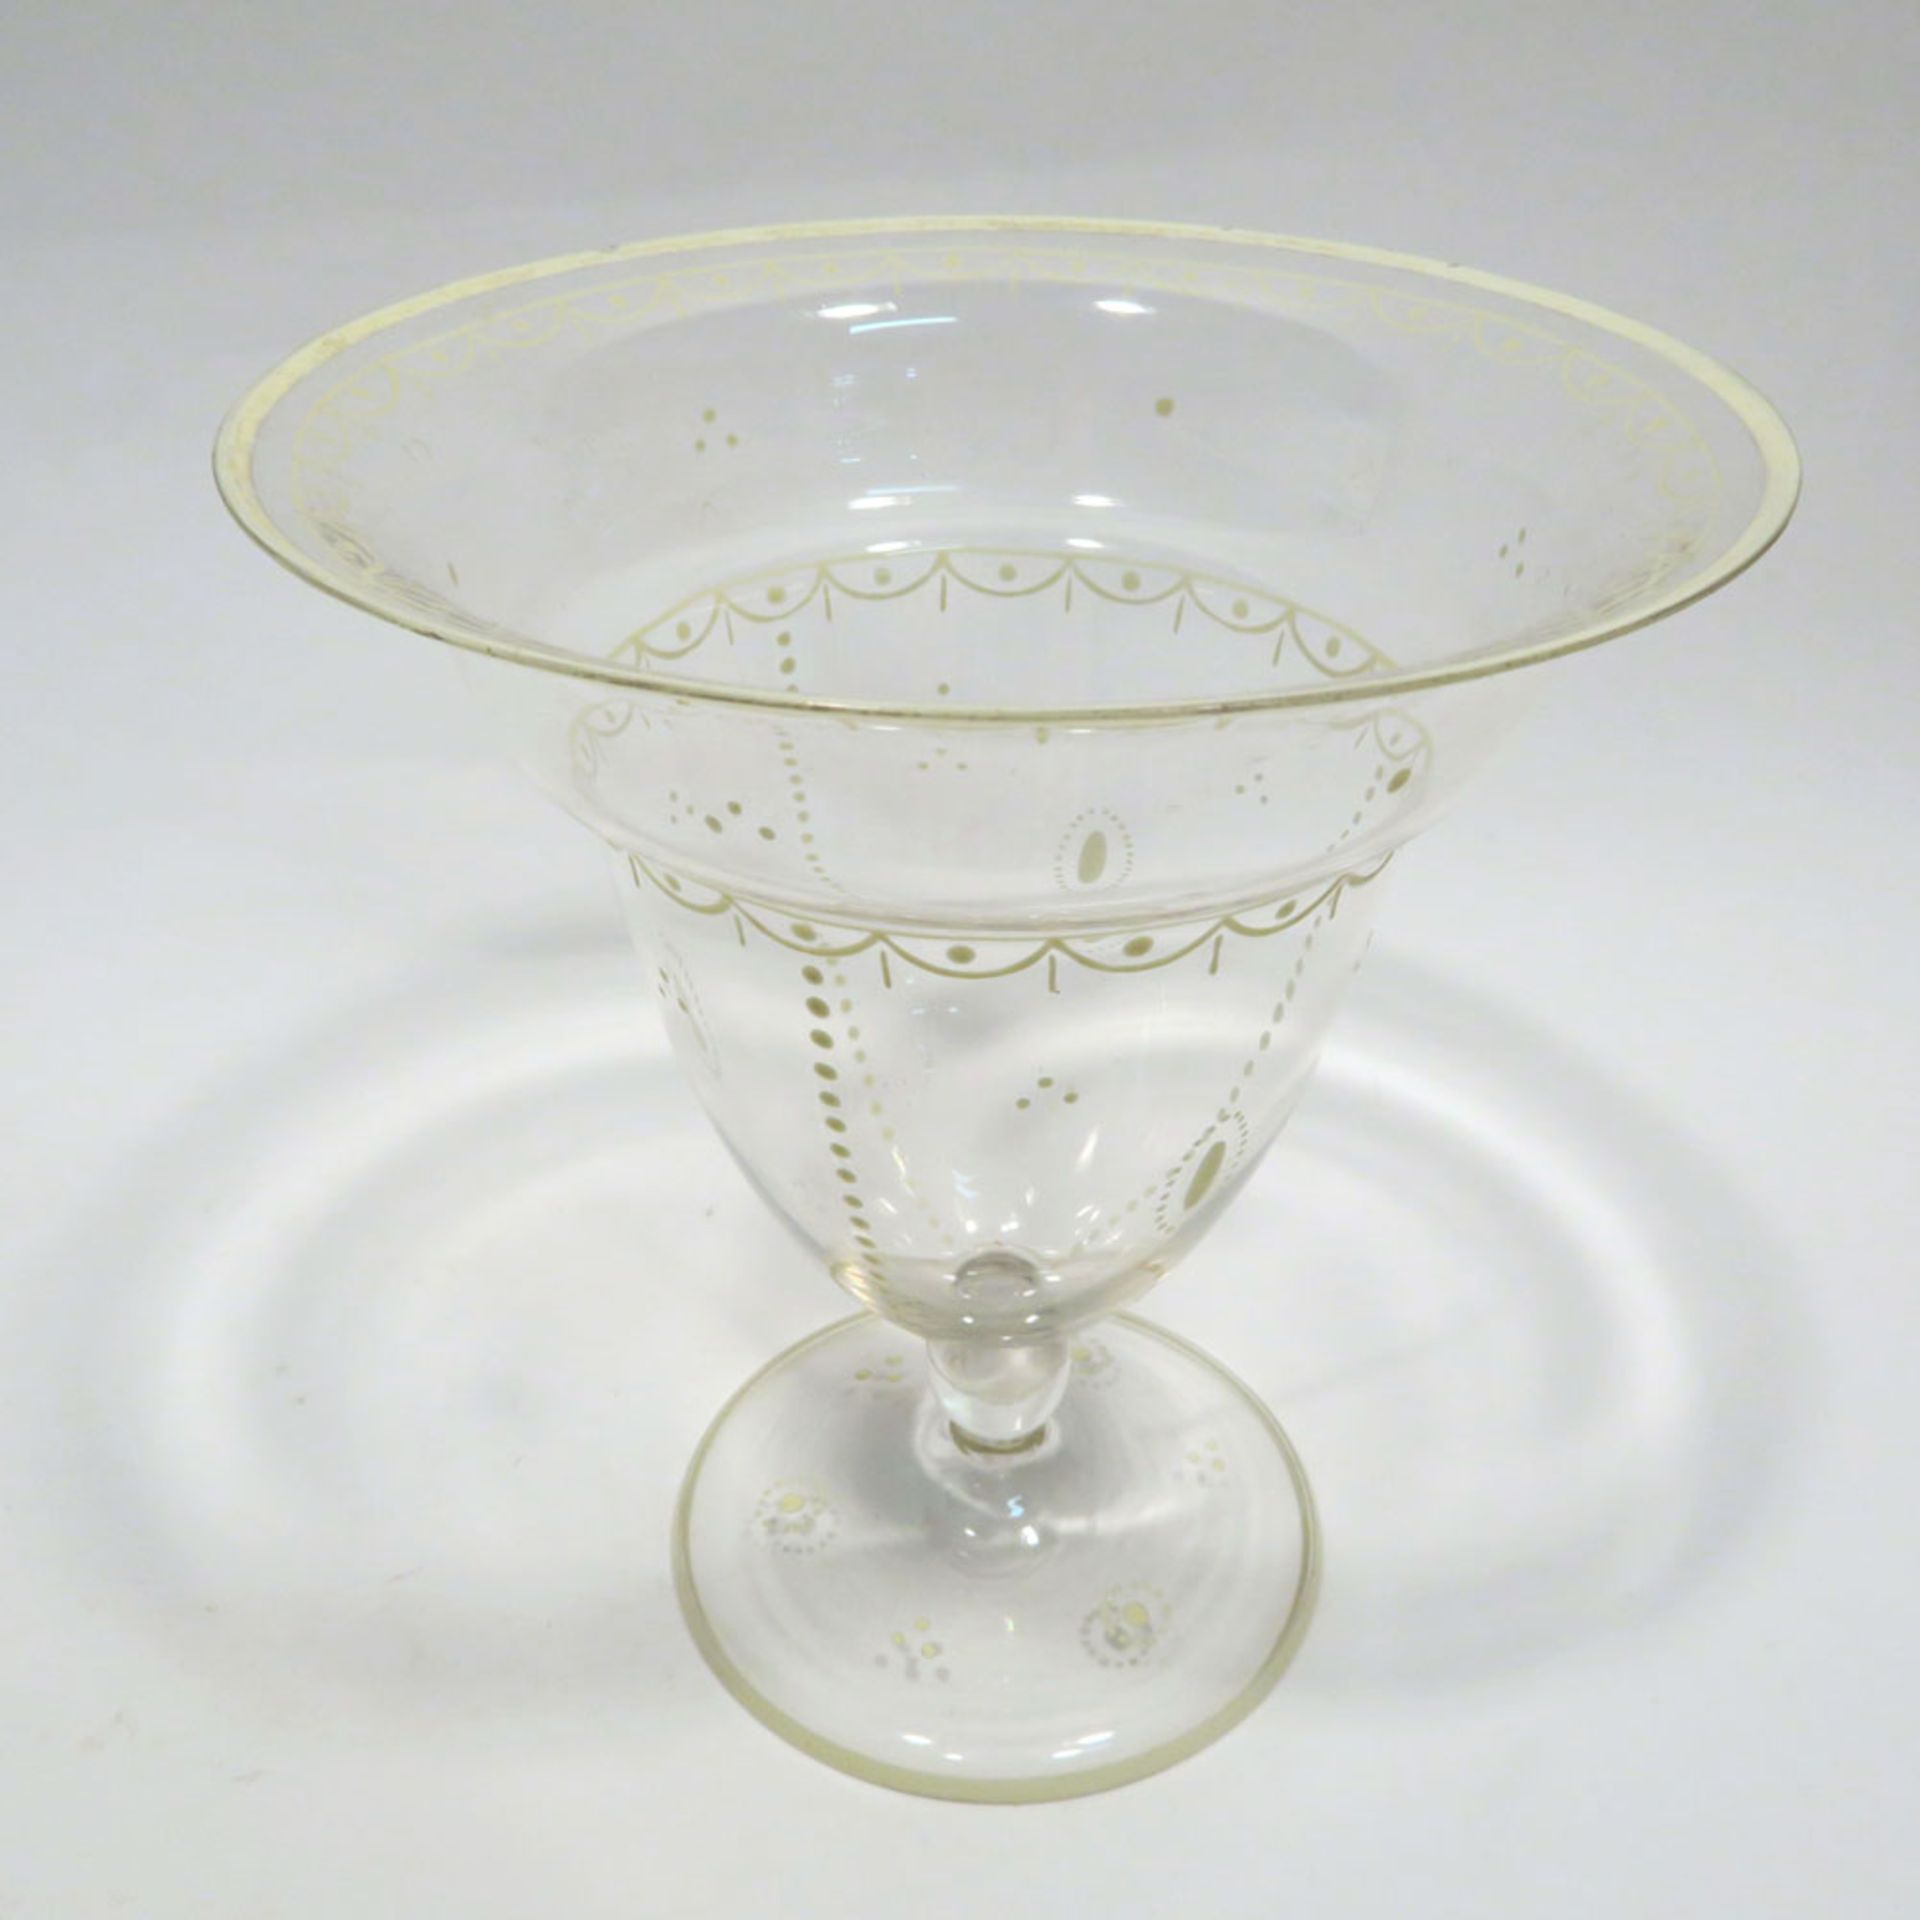 VaseFarbloses Glas mit weißem Emaildekor: Behangbordüren, Tupfenlinien etc. Min. best. H. 16 cm. - Image 2 of 2